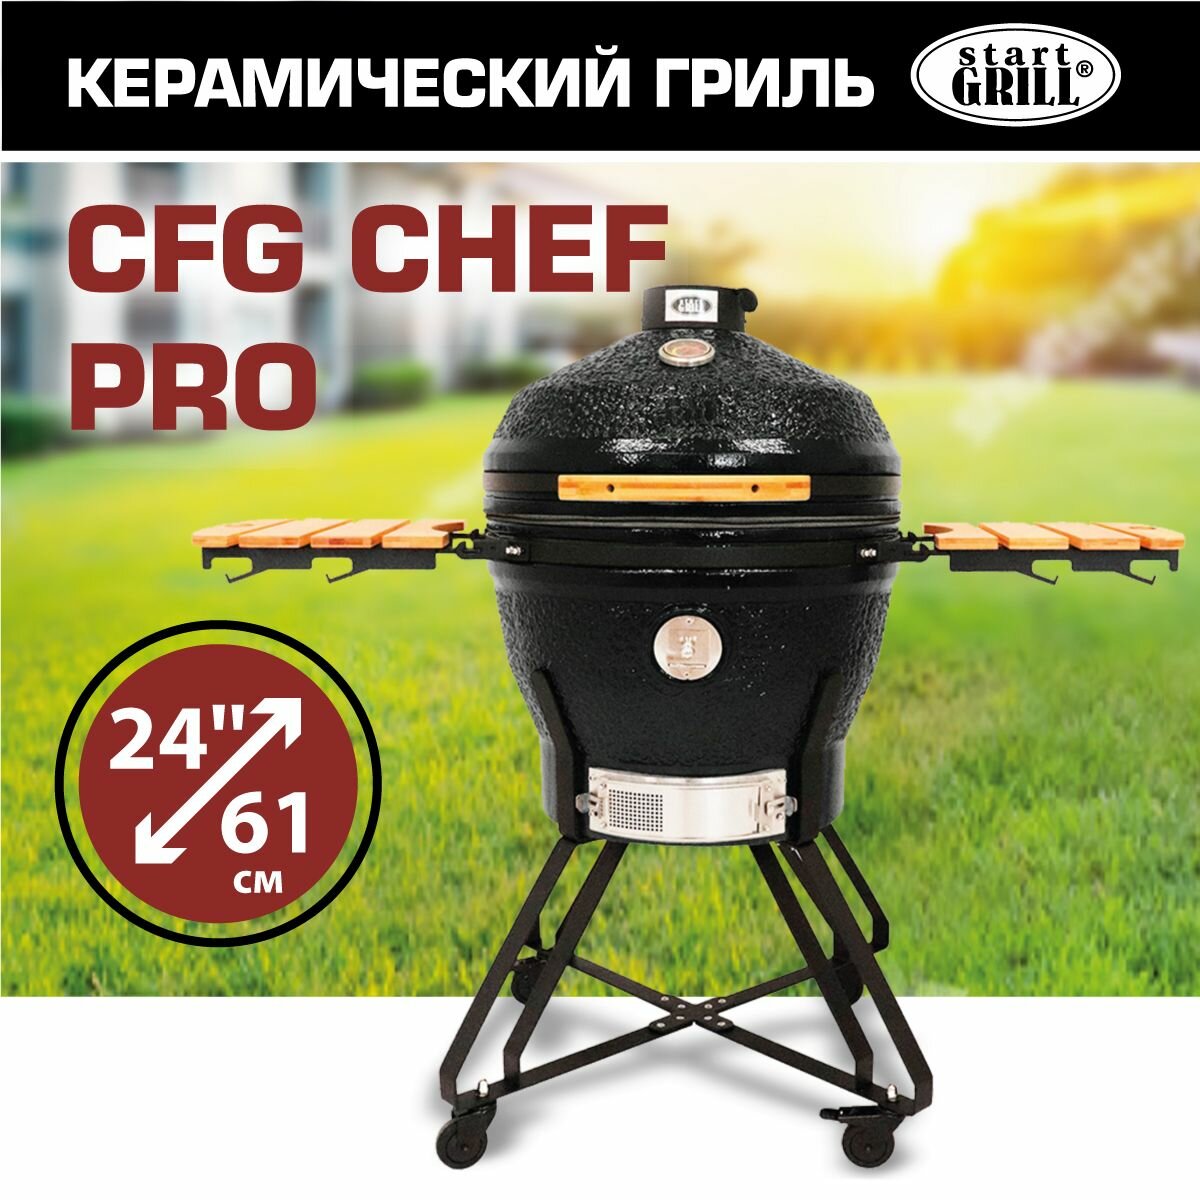 Керамический гриль-барбекю, 61 см/24 дюйма (черный)Start Grill